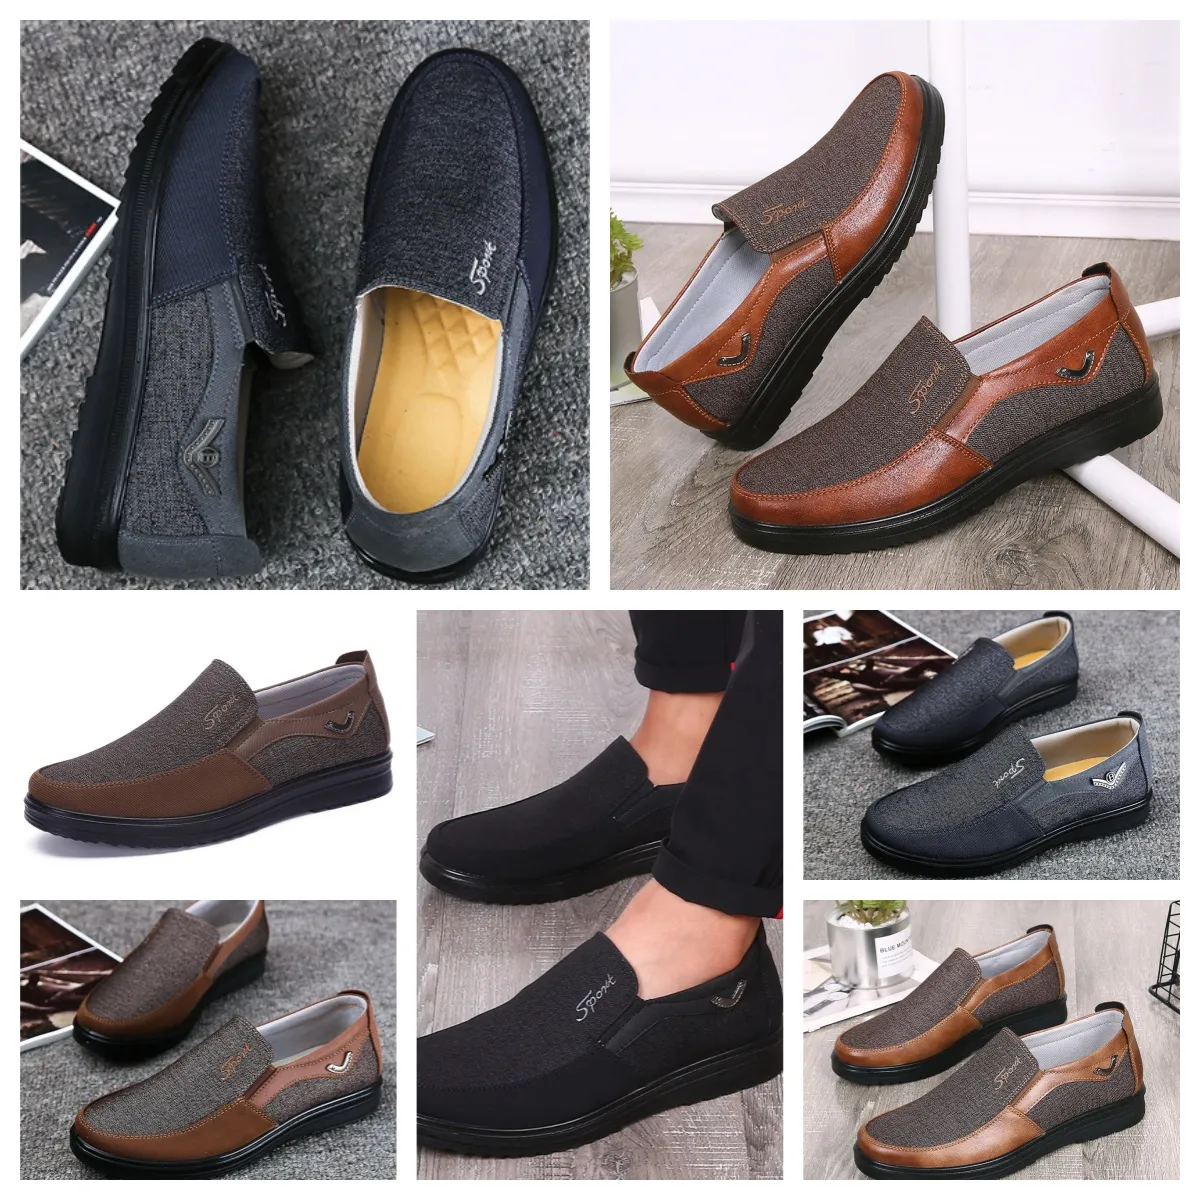 Sapatos GAI tênis casual sapato masculino único negócio dedo do pé redondo sapato casual softs sola chinelo plano masculino clássico confortável sapato de couro respirável tamanho EUR 38-50